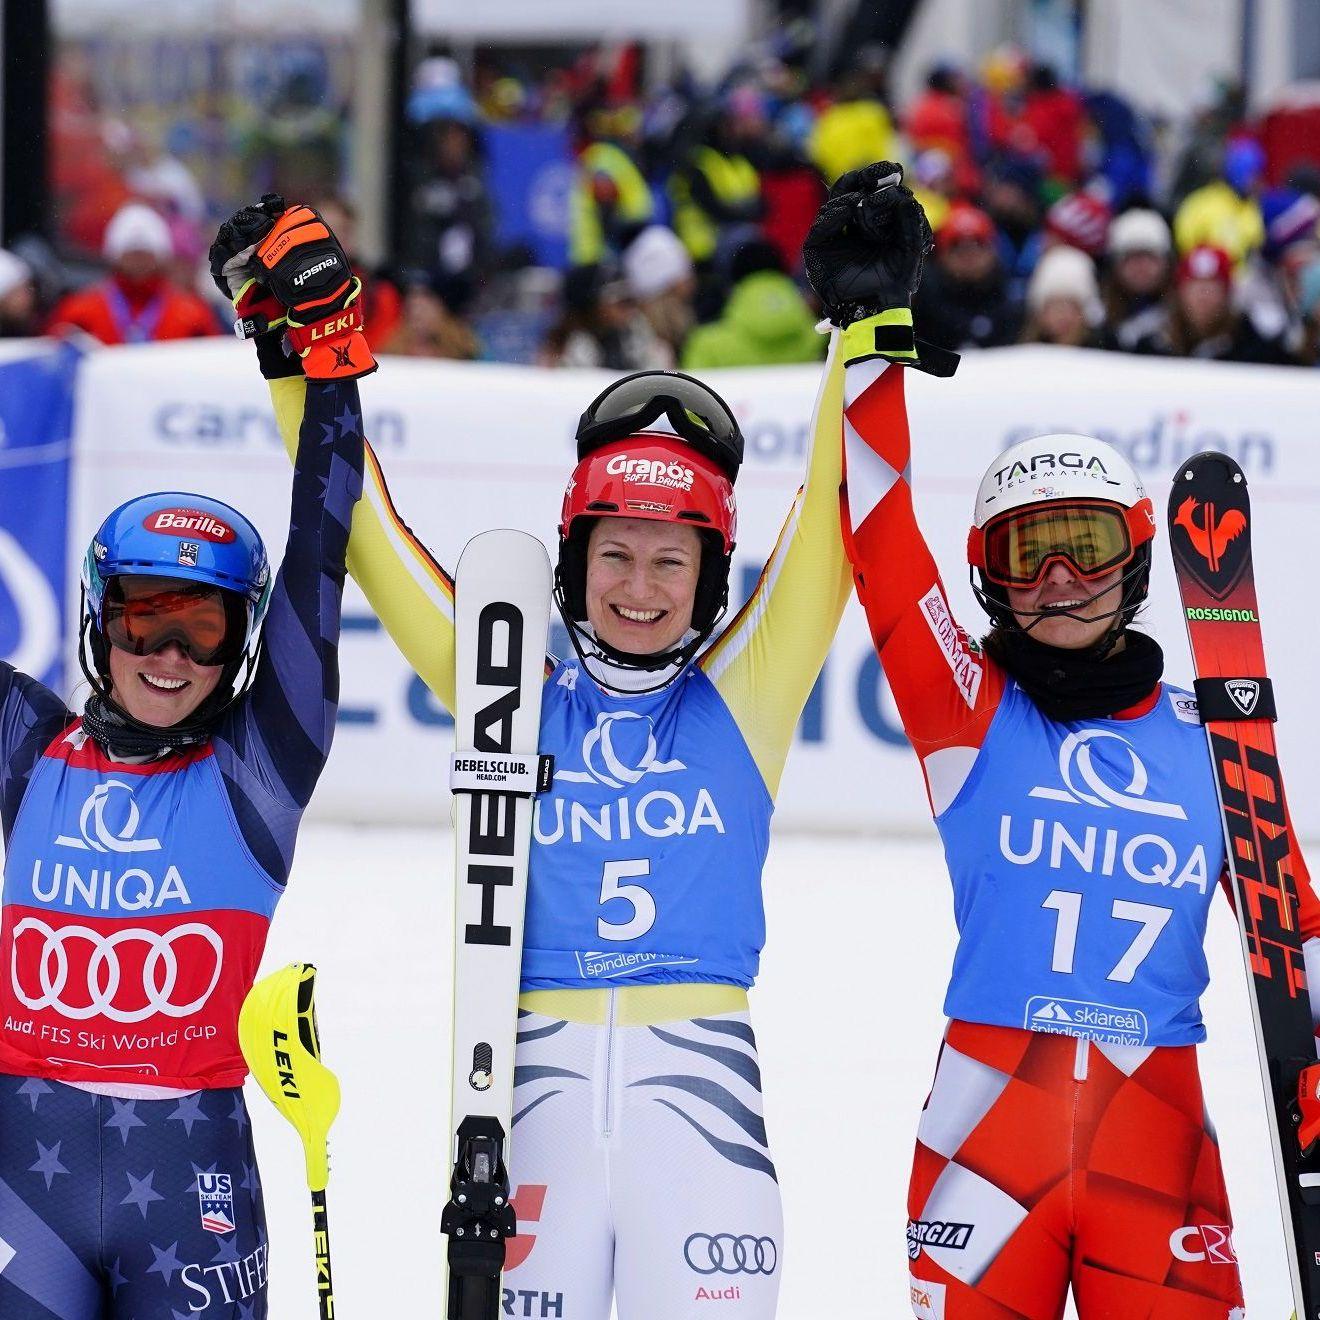 Dvije hrvatske skijašice završile u top 5 po prvi put u historiji 